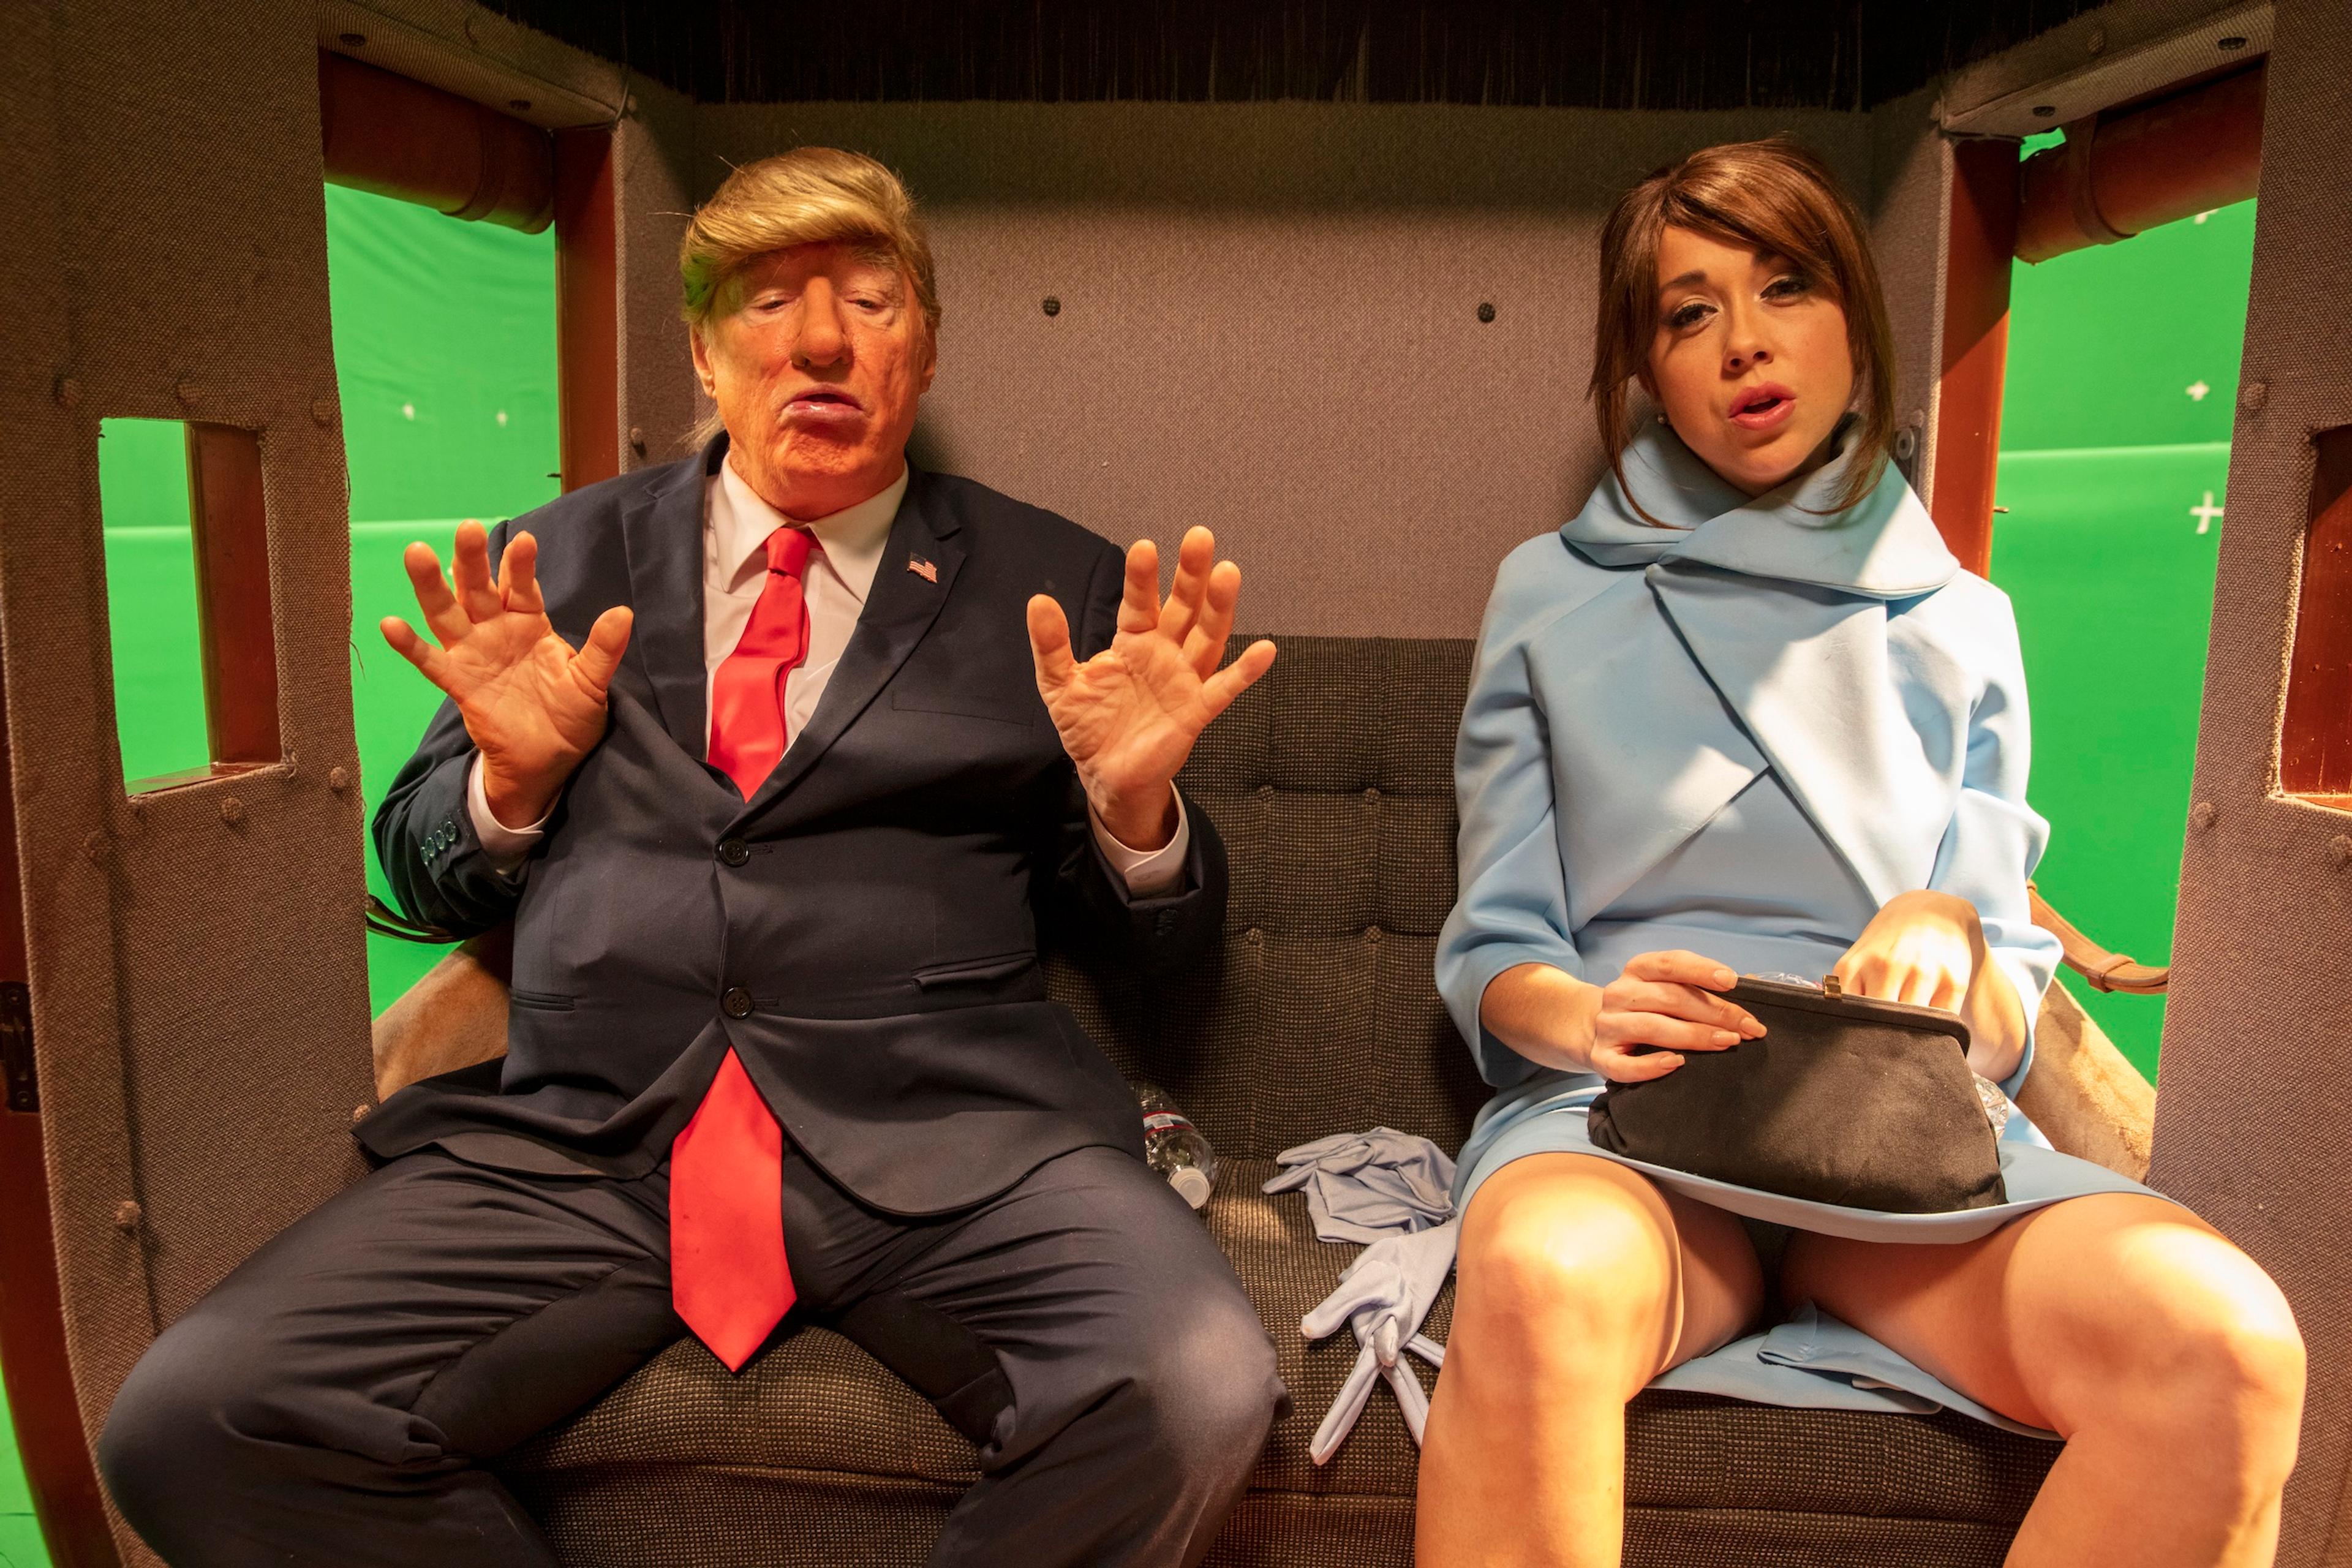 Stillfoto fra videoinstallasjonen DADDA hvor kunstneren Paul McCarthy er utkledd som den amerikanske Donald Trump. Han sitter sammen med en skuespiller som er kledt som presidentens kone Melania Trump. 